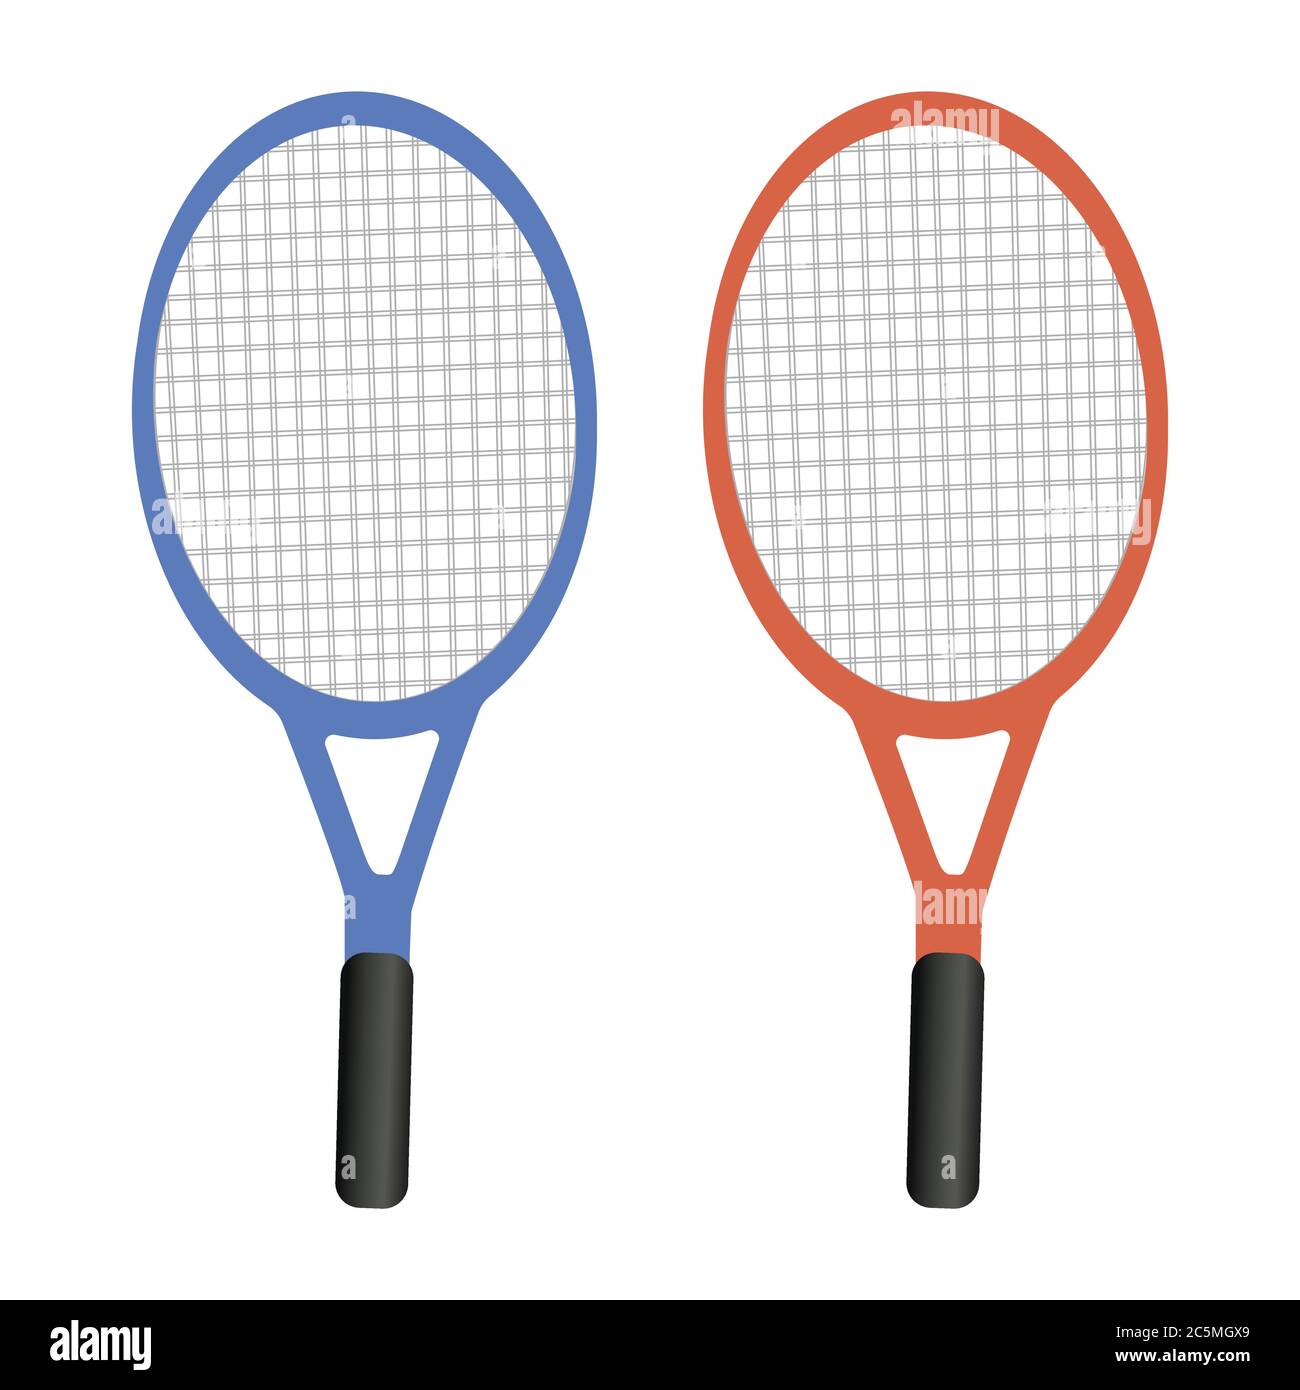 Raquette de tennis avec boule jaune sur fond blanc. Illustration vectorielle de style plat tendance. SPE 10 Illustration de Vecteur